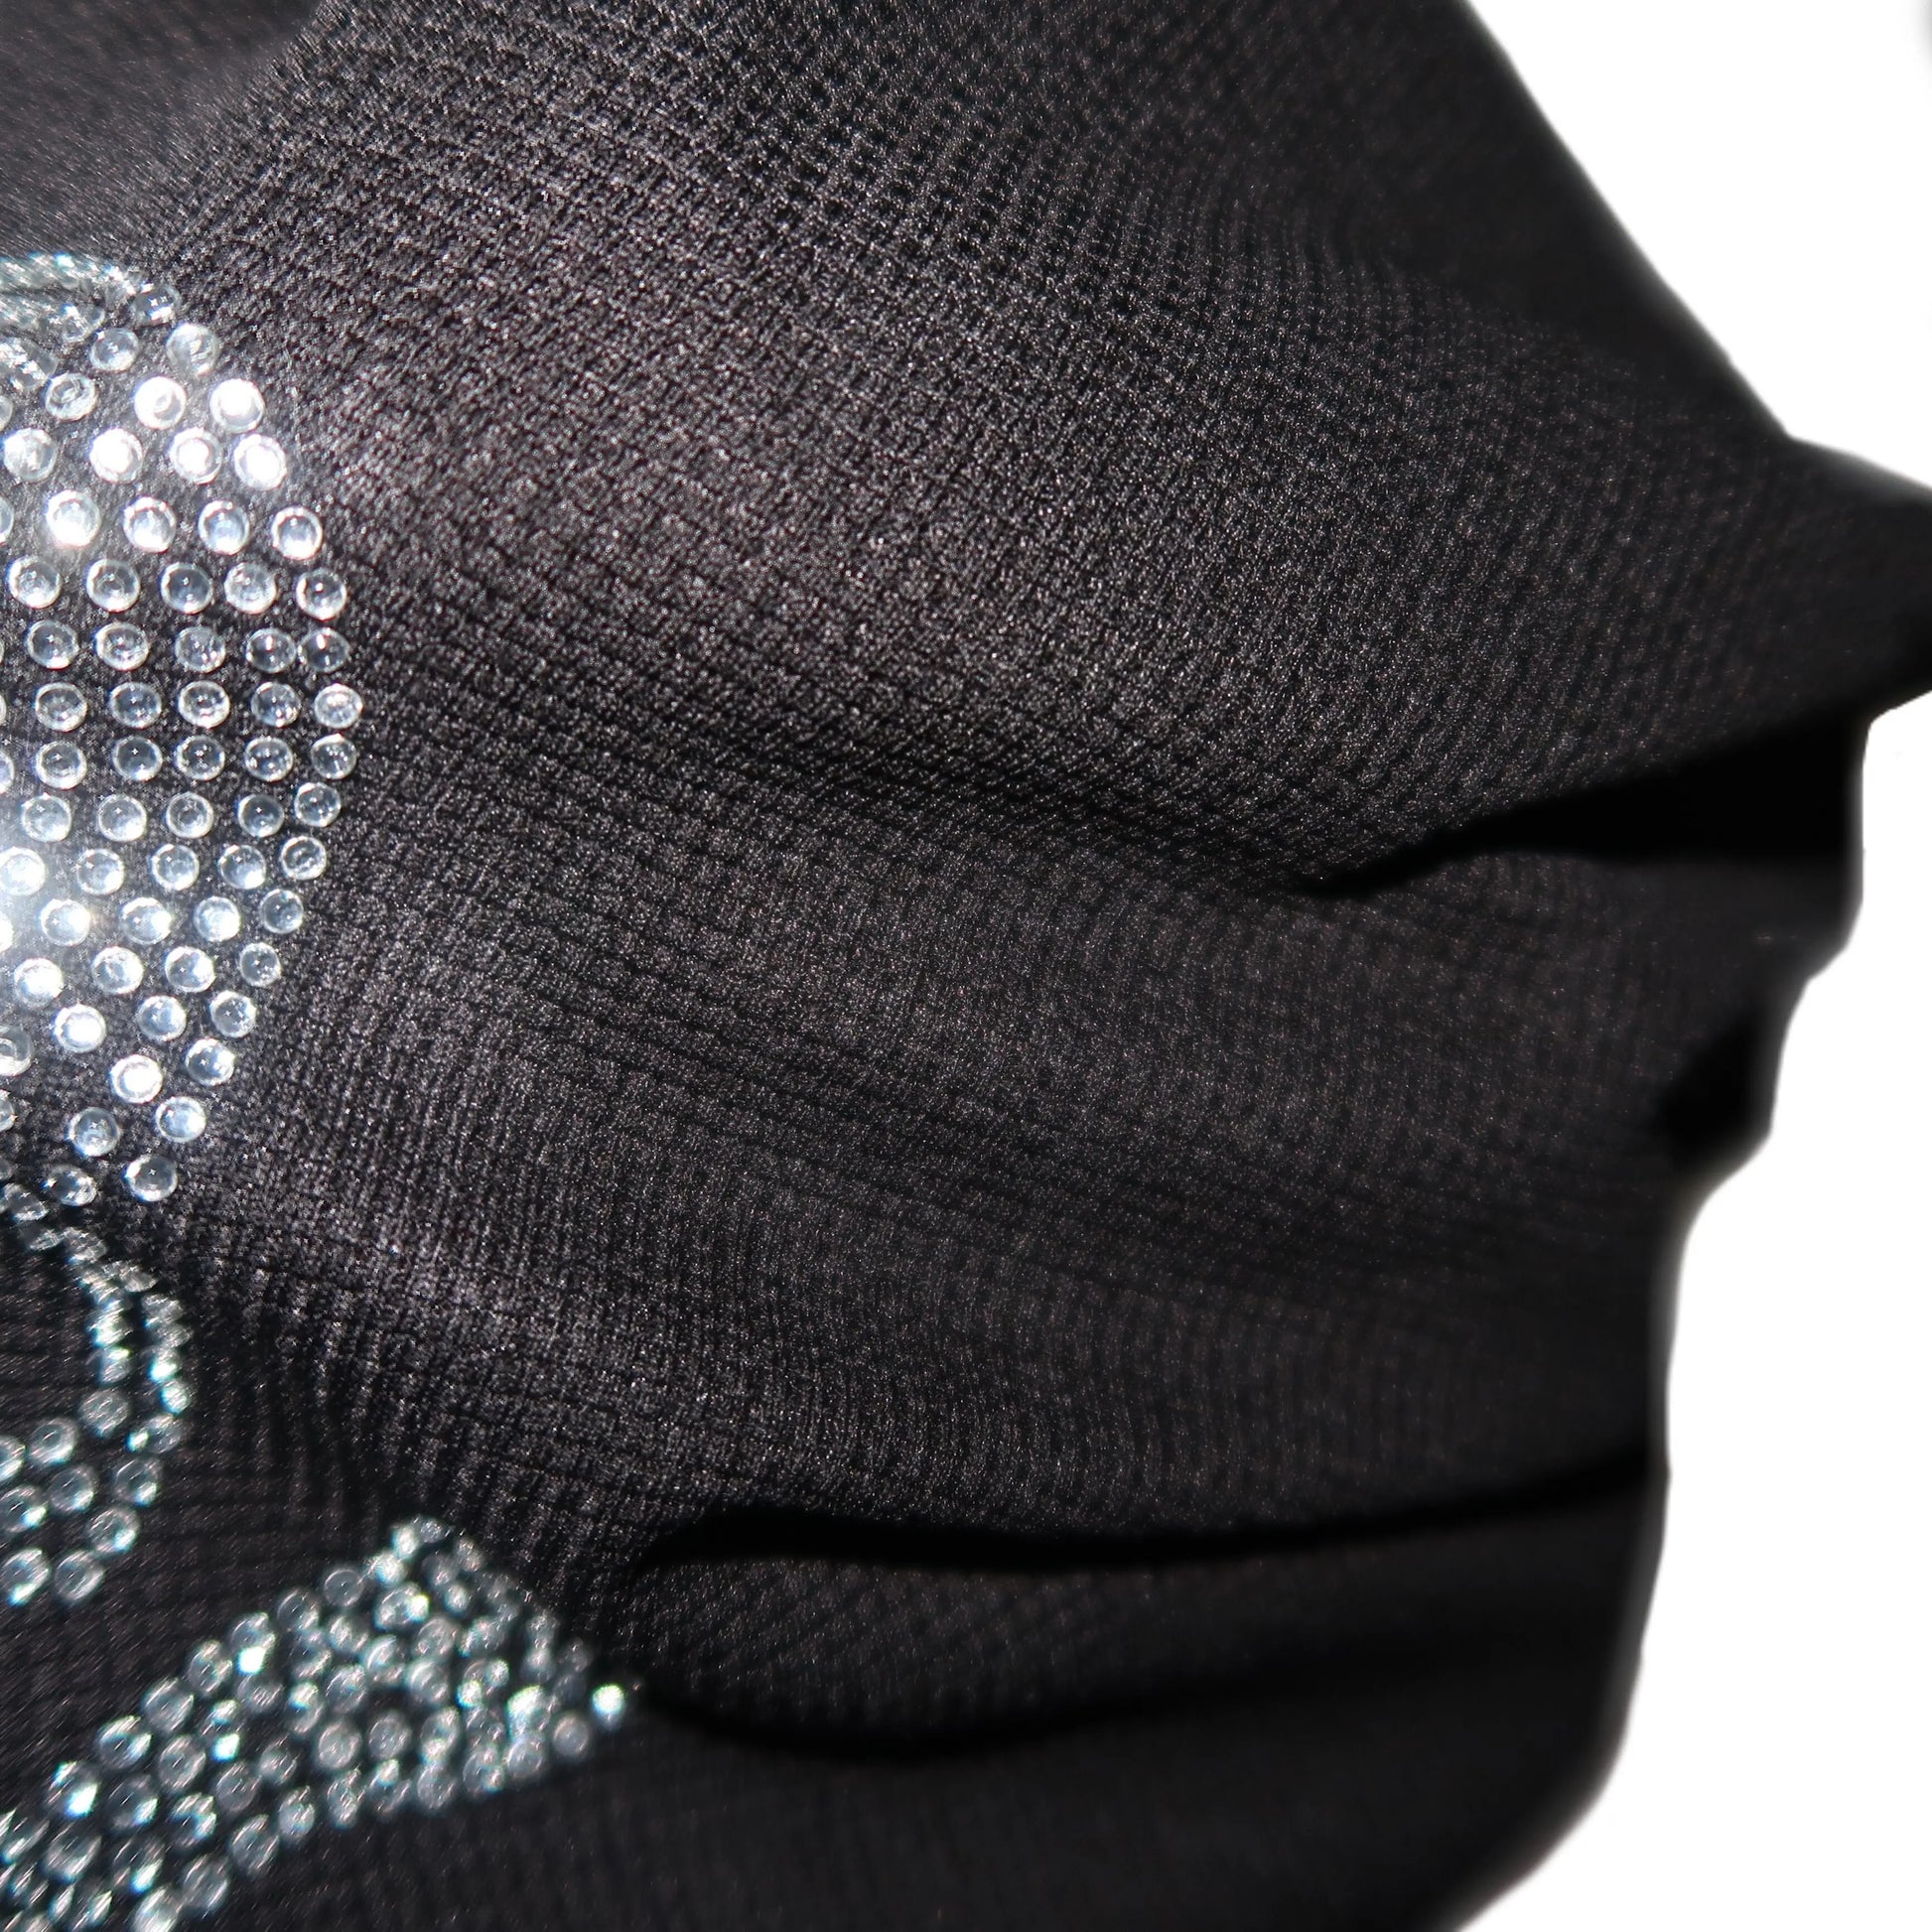 ‘Teen Spirit' Grunge Skull Sequins Beanie Hat